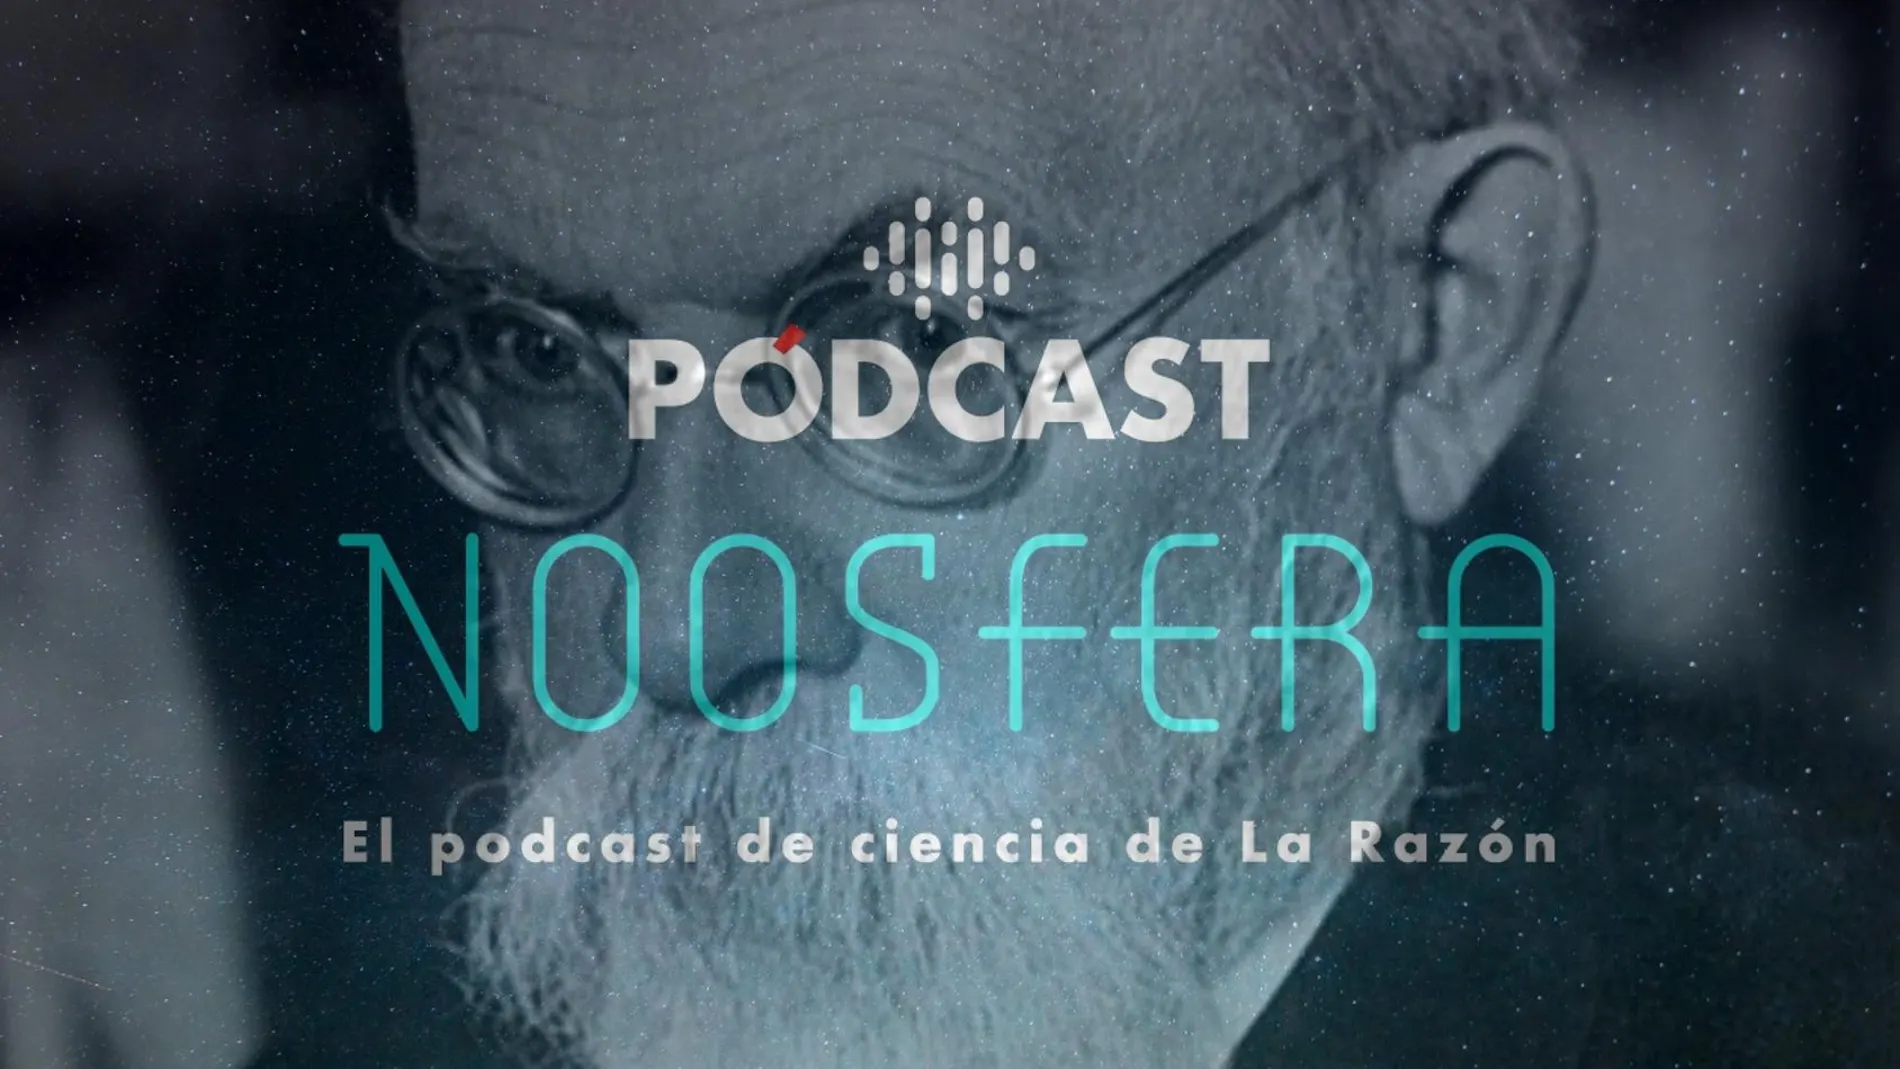 Noosfera, el podcast de ciencia de la Razón transparentado sobre la fotografía de uno de los fundadores del término "noosfera", Vladimir Vernadsky